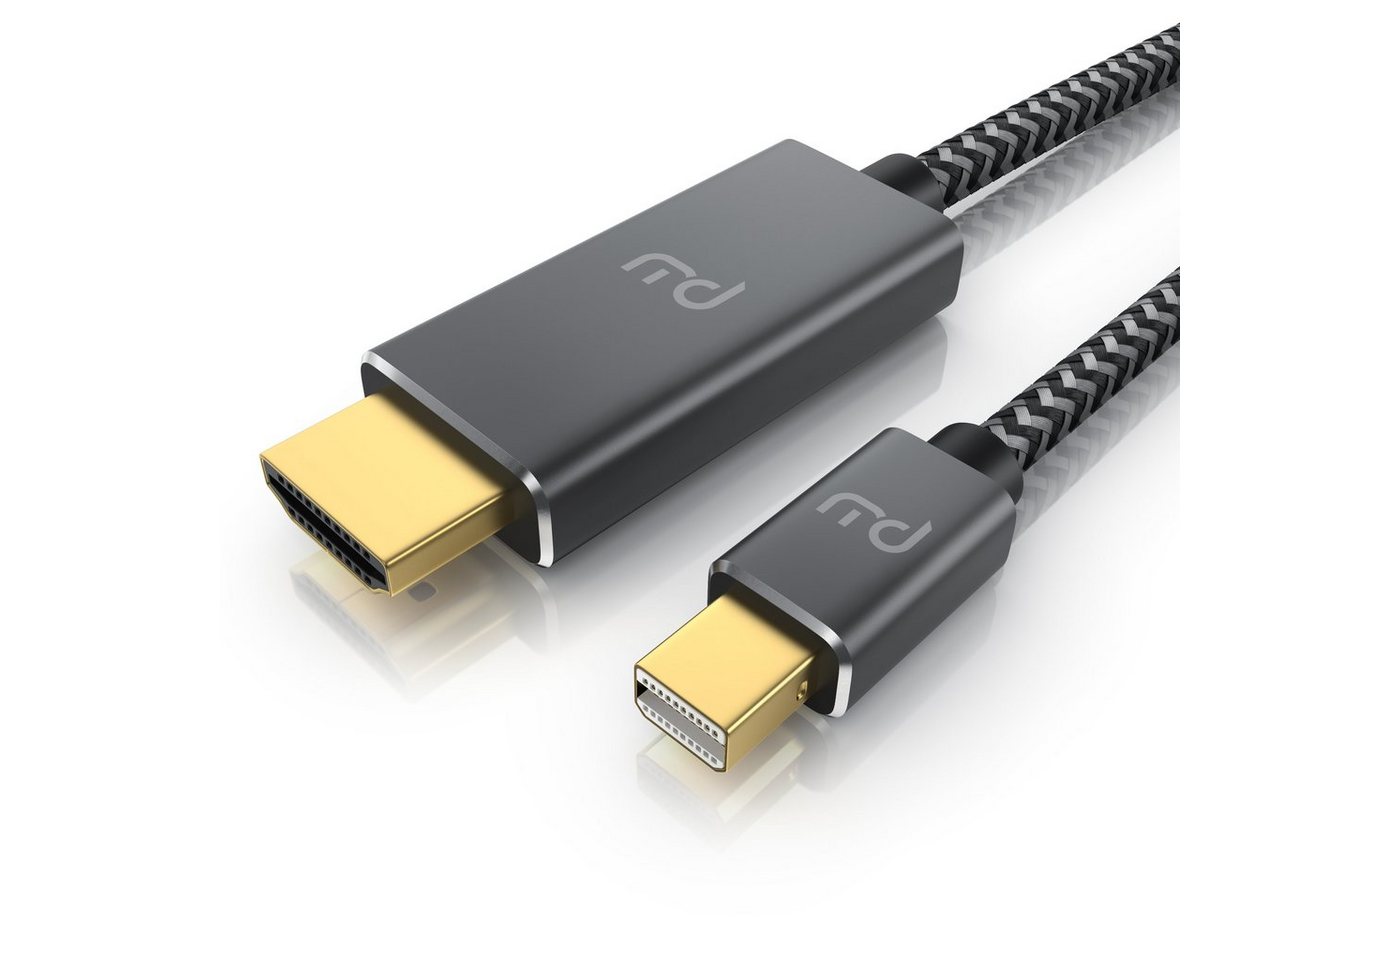 Primewire Audio- & Video-Kabel, Mini DisplayPort, HDMI Typ A (200 cm), 4k mDP 1.4 zu Hdmi 2.0 Kabel / Adapter 4k@60Hz Thunderbolt 1-2 - 2m von Primewire